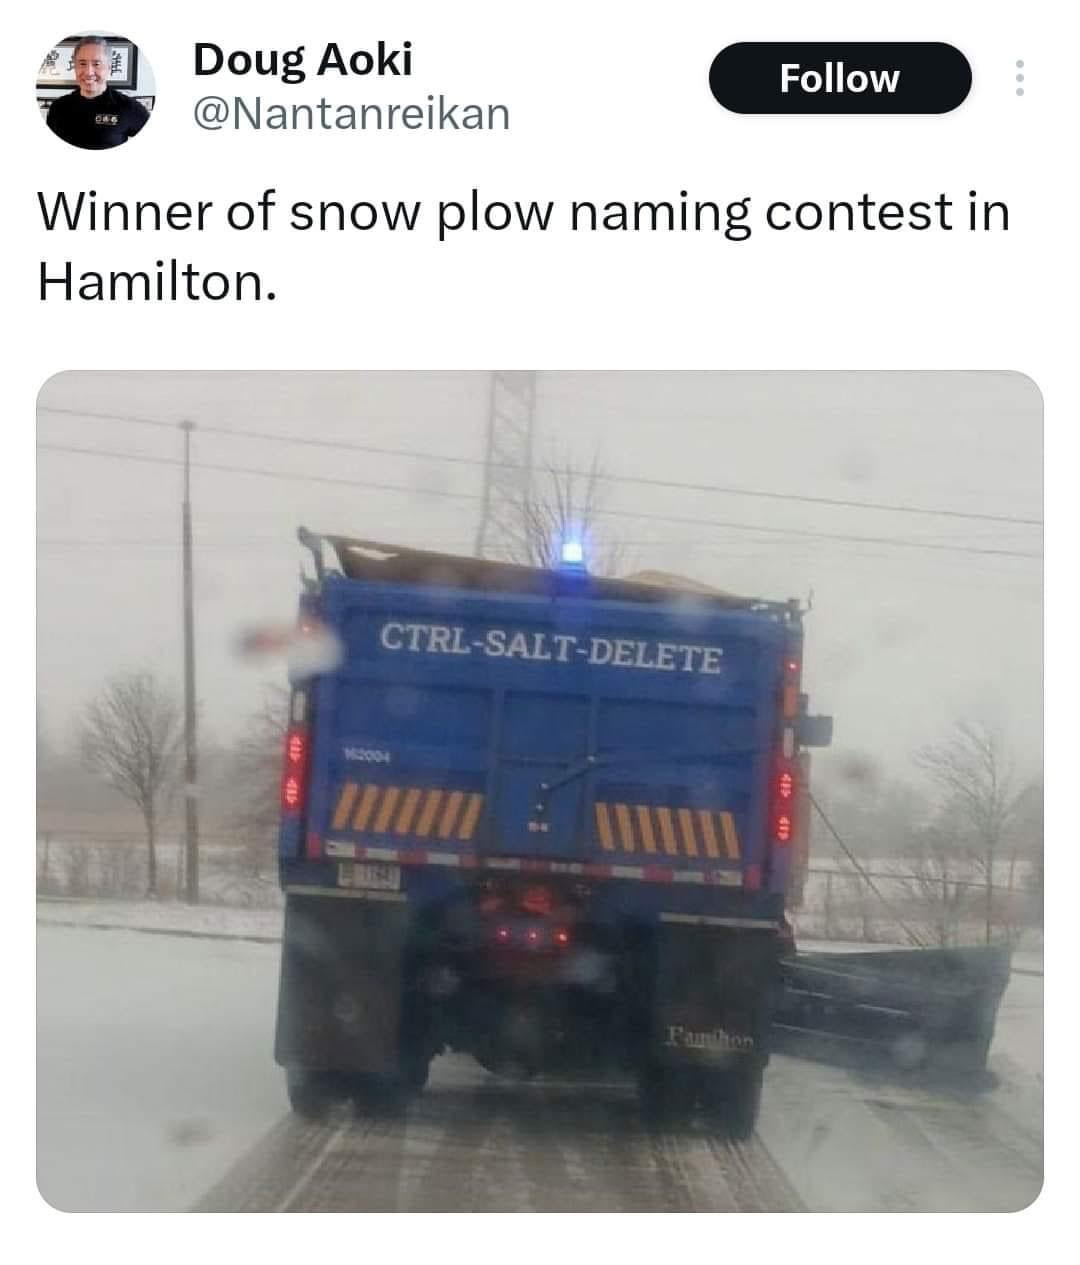 Salt truck named "CTRL-SALT-Delete."